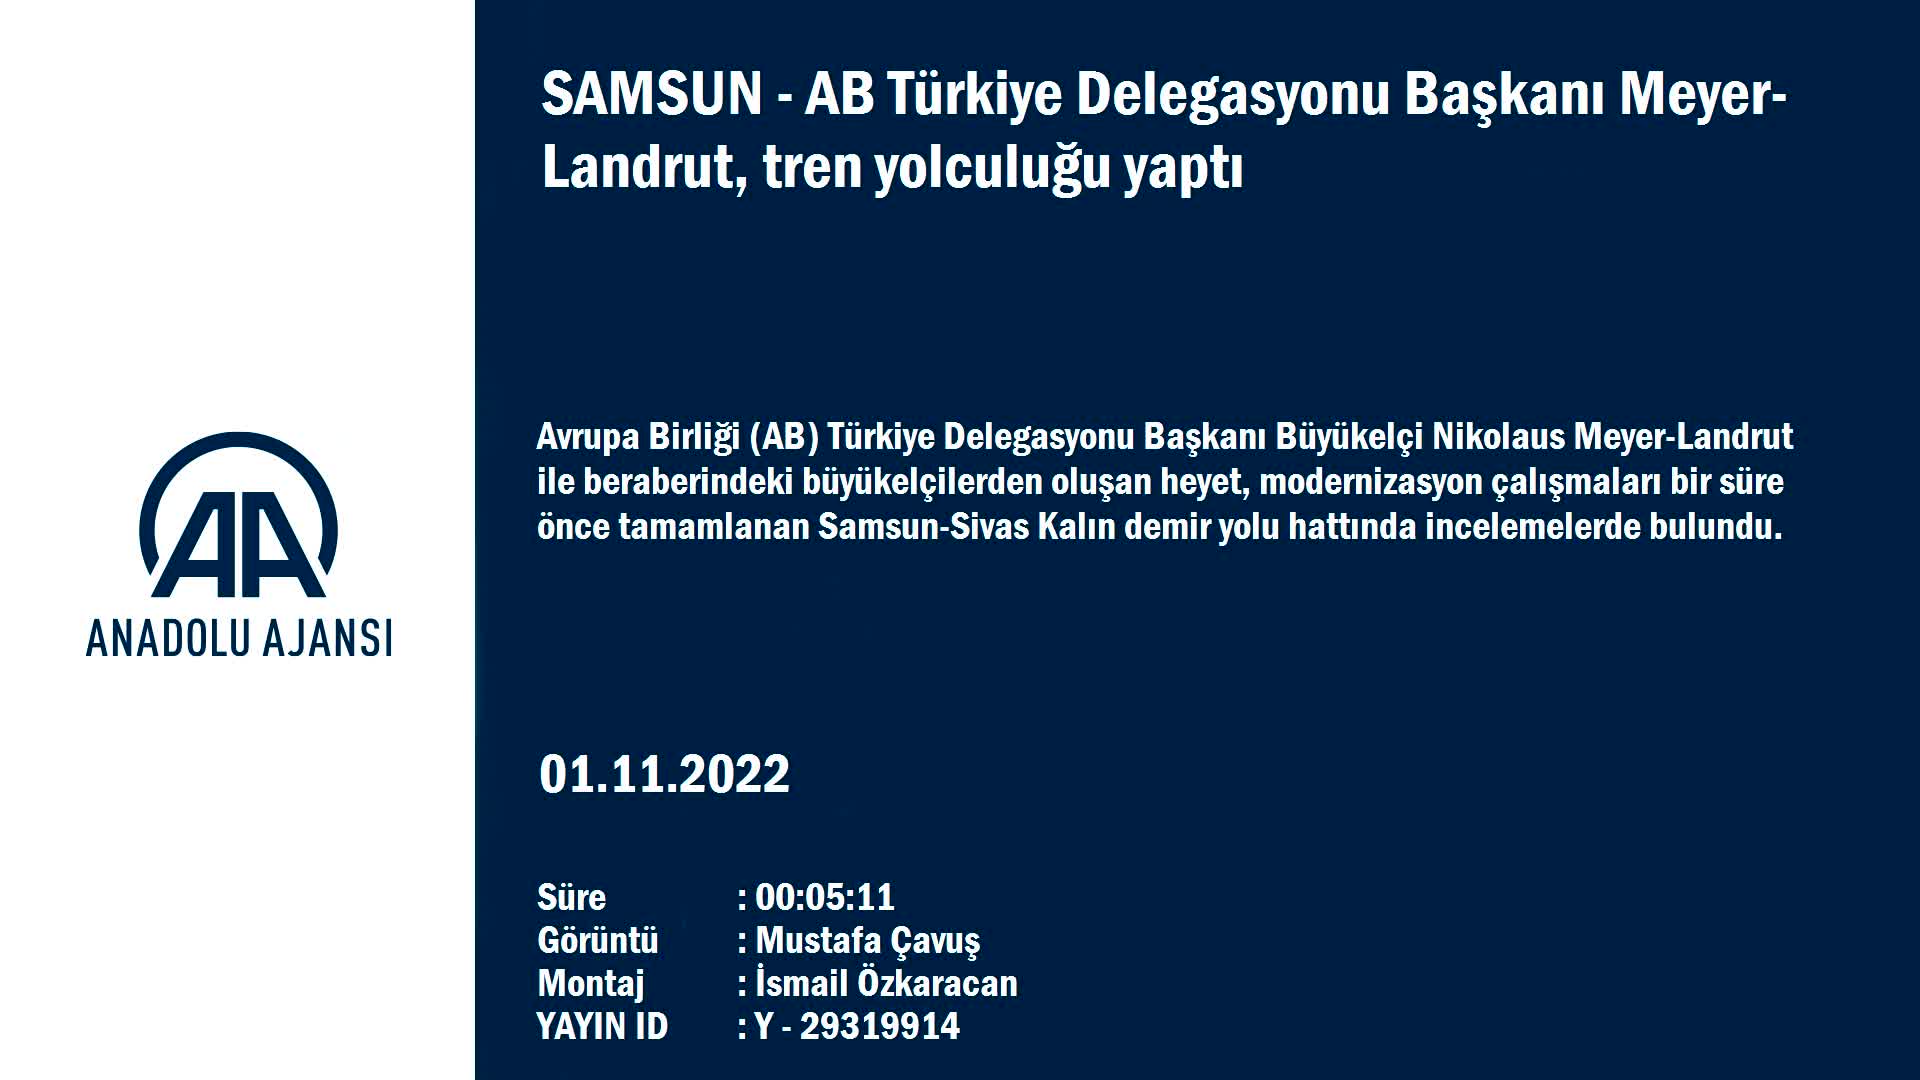 AB Türkiye Delegasyonu Başkanı Meyer-Landrut, Samsun’da tren yolculuğu yaptı: